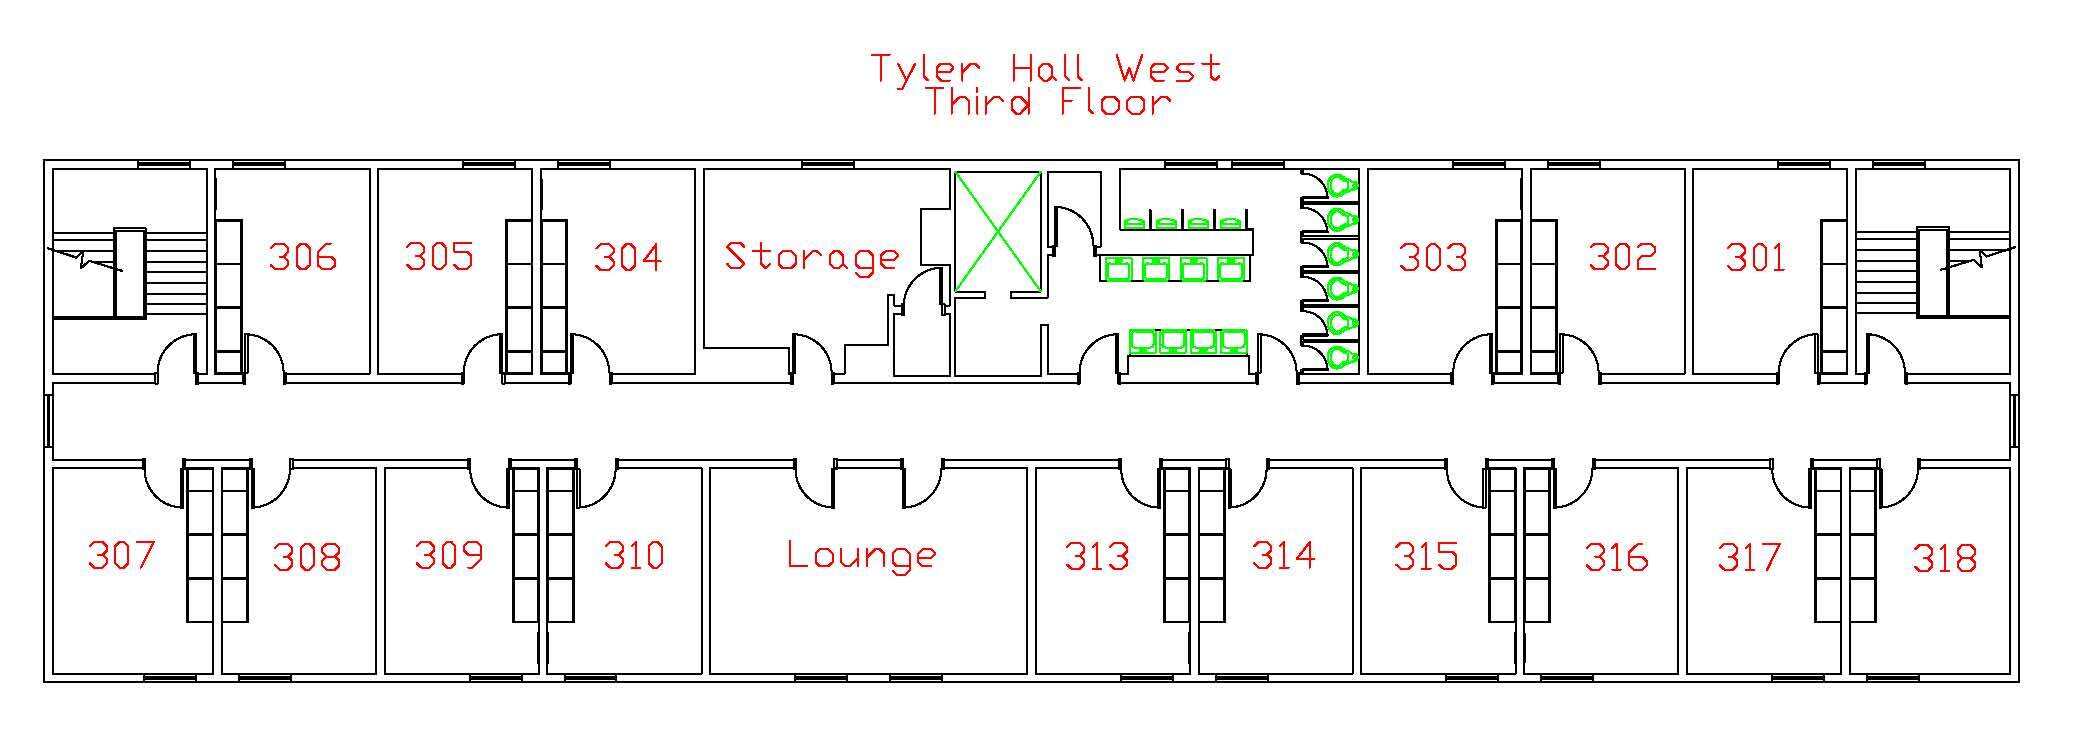 Tyler West Third Floor